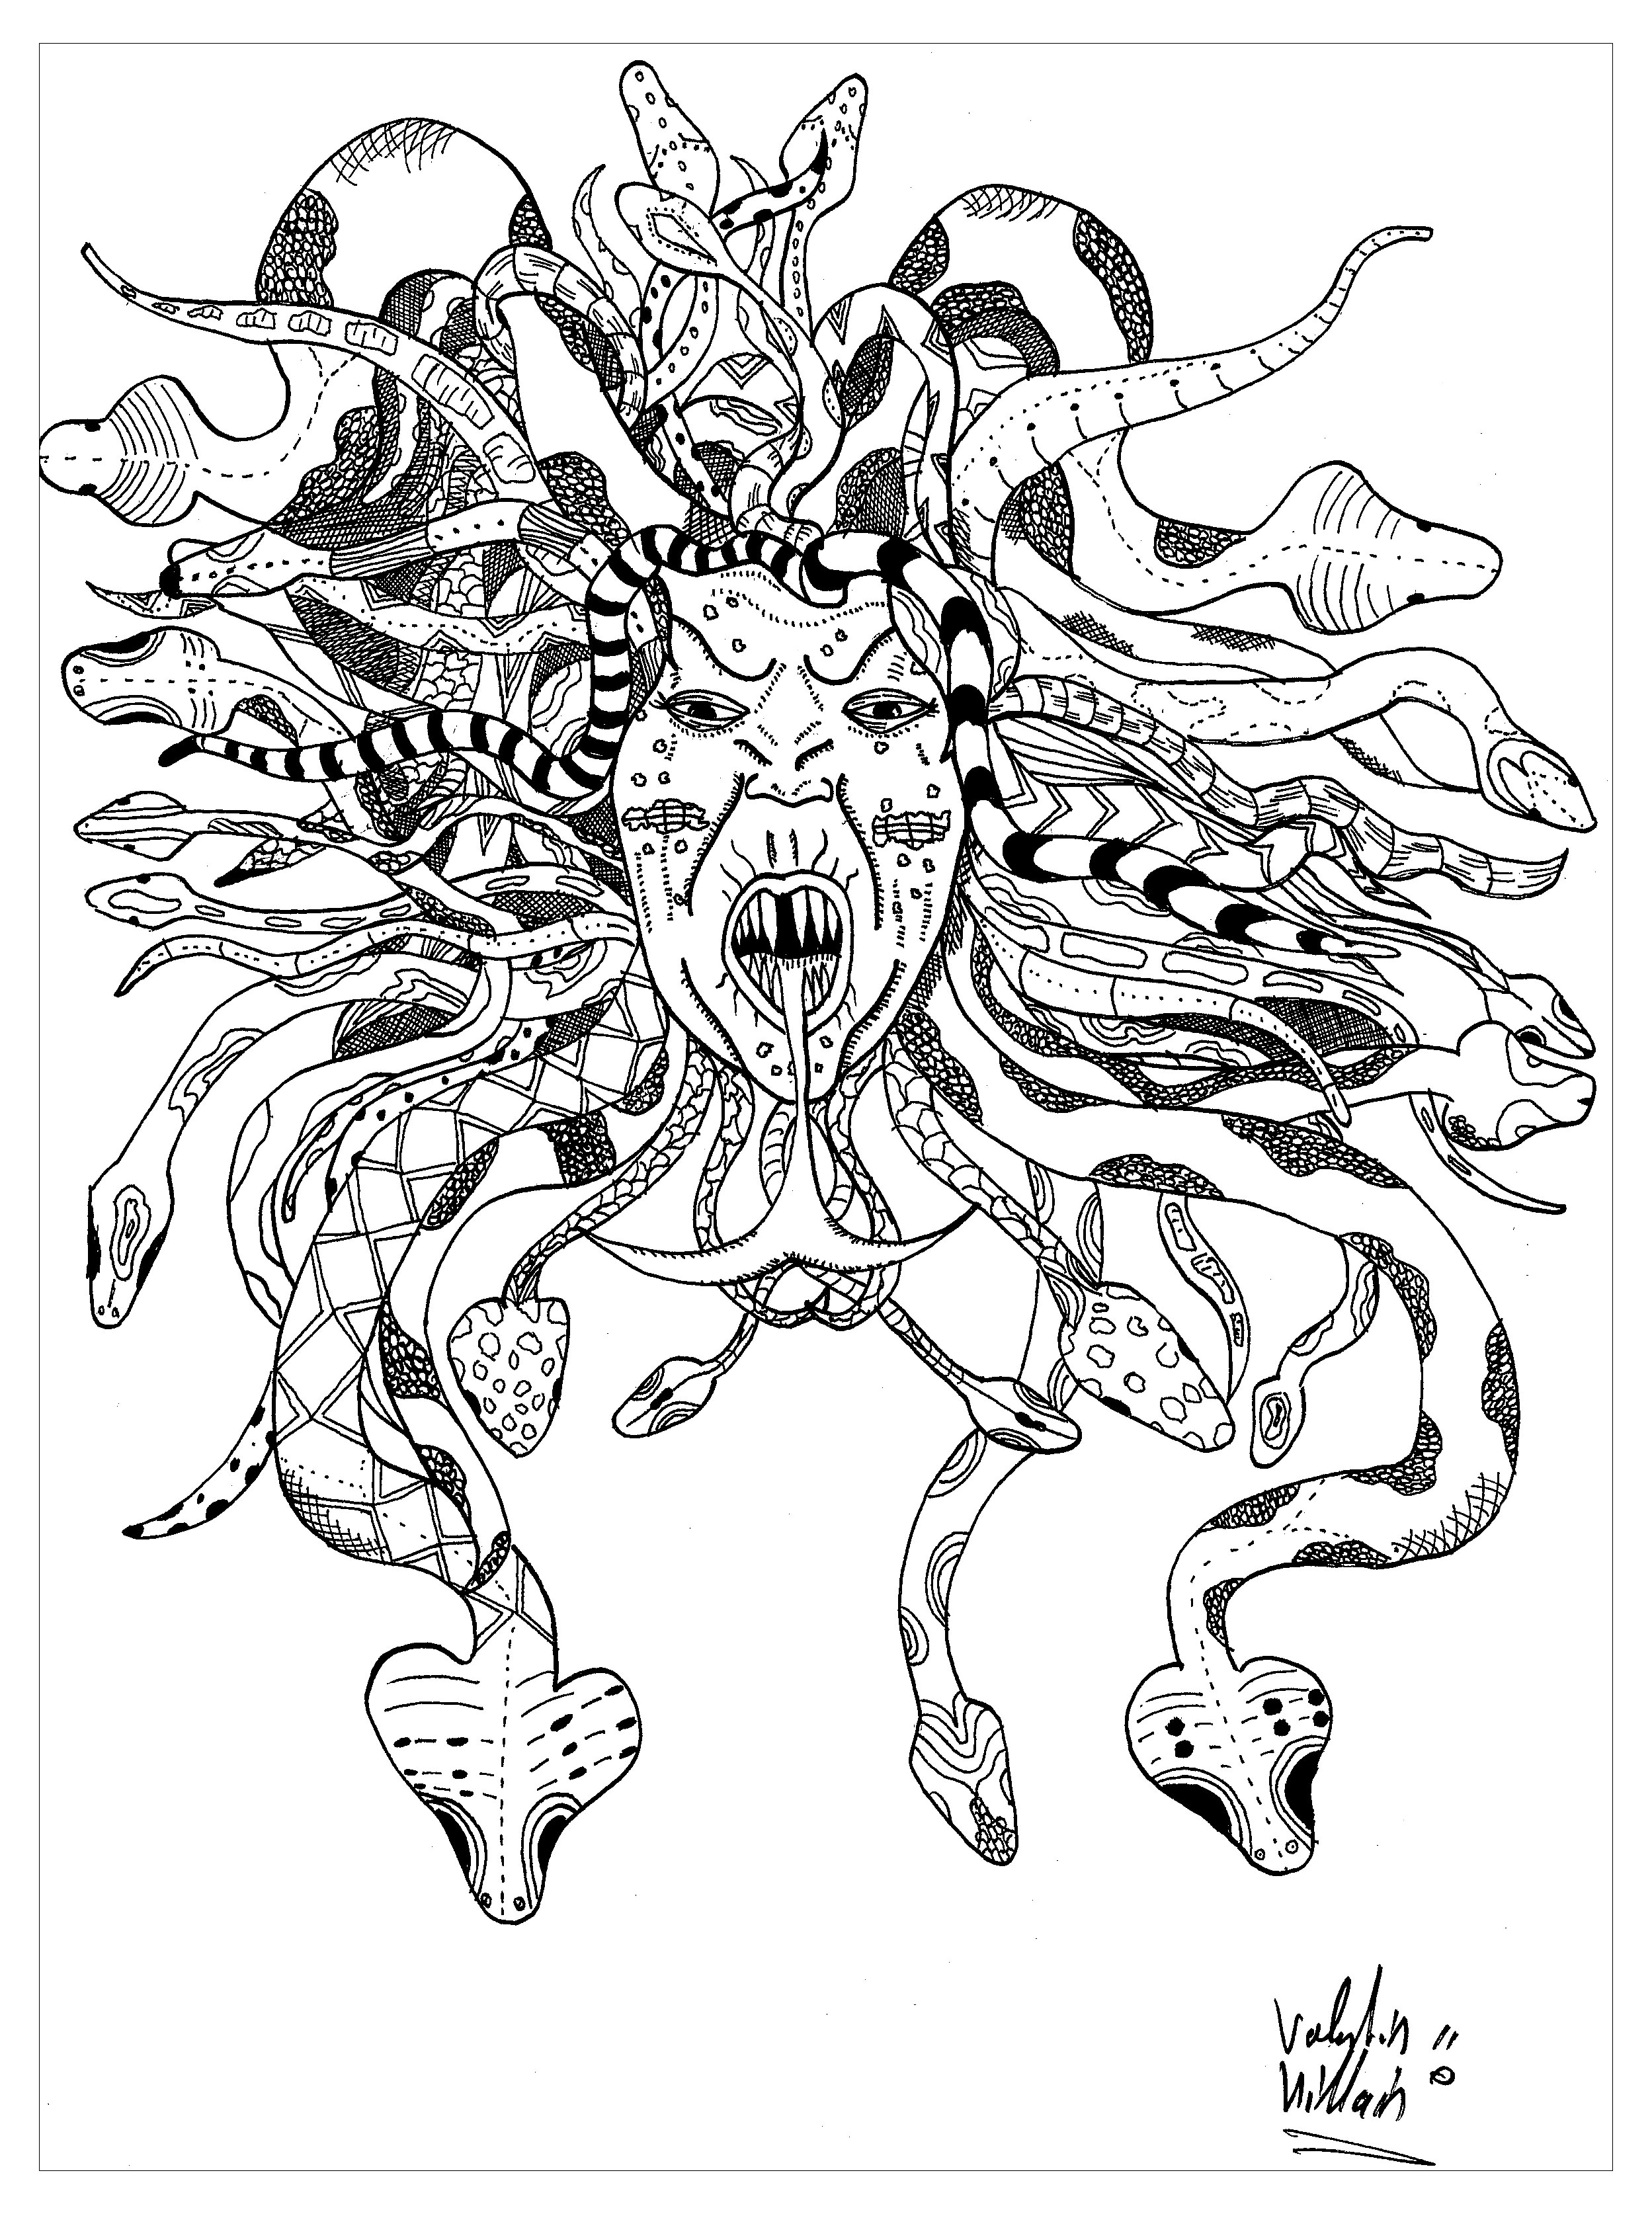 Colorare rappresentando Medusa. Ecco una magnifica rappresentazione della mitica Gorgone Medusa. Il suo volto è circondato da una criniera intrecciata di serpenti, che le conferisce un aspetto terrificante.